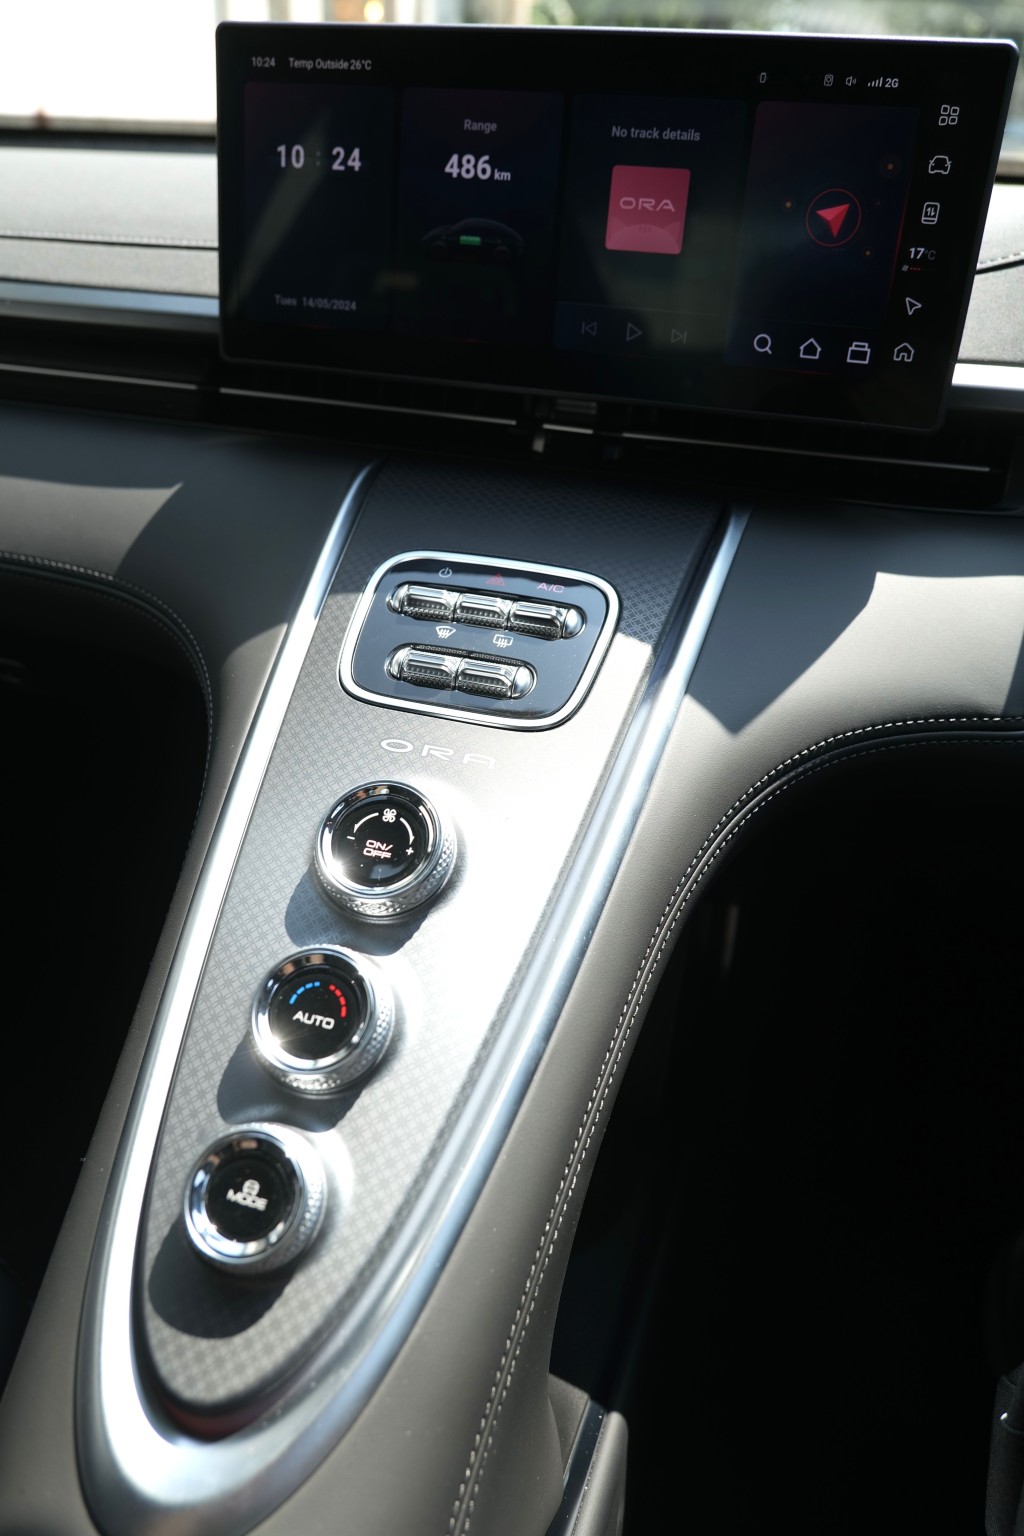 國產電動車ORA 07 GT中控12.3吋觸屏下方是一組實體鍵及三個大型旋鈕，後者控制冷氣及行車模式。